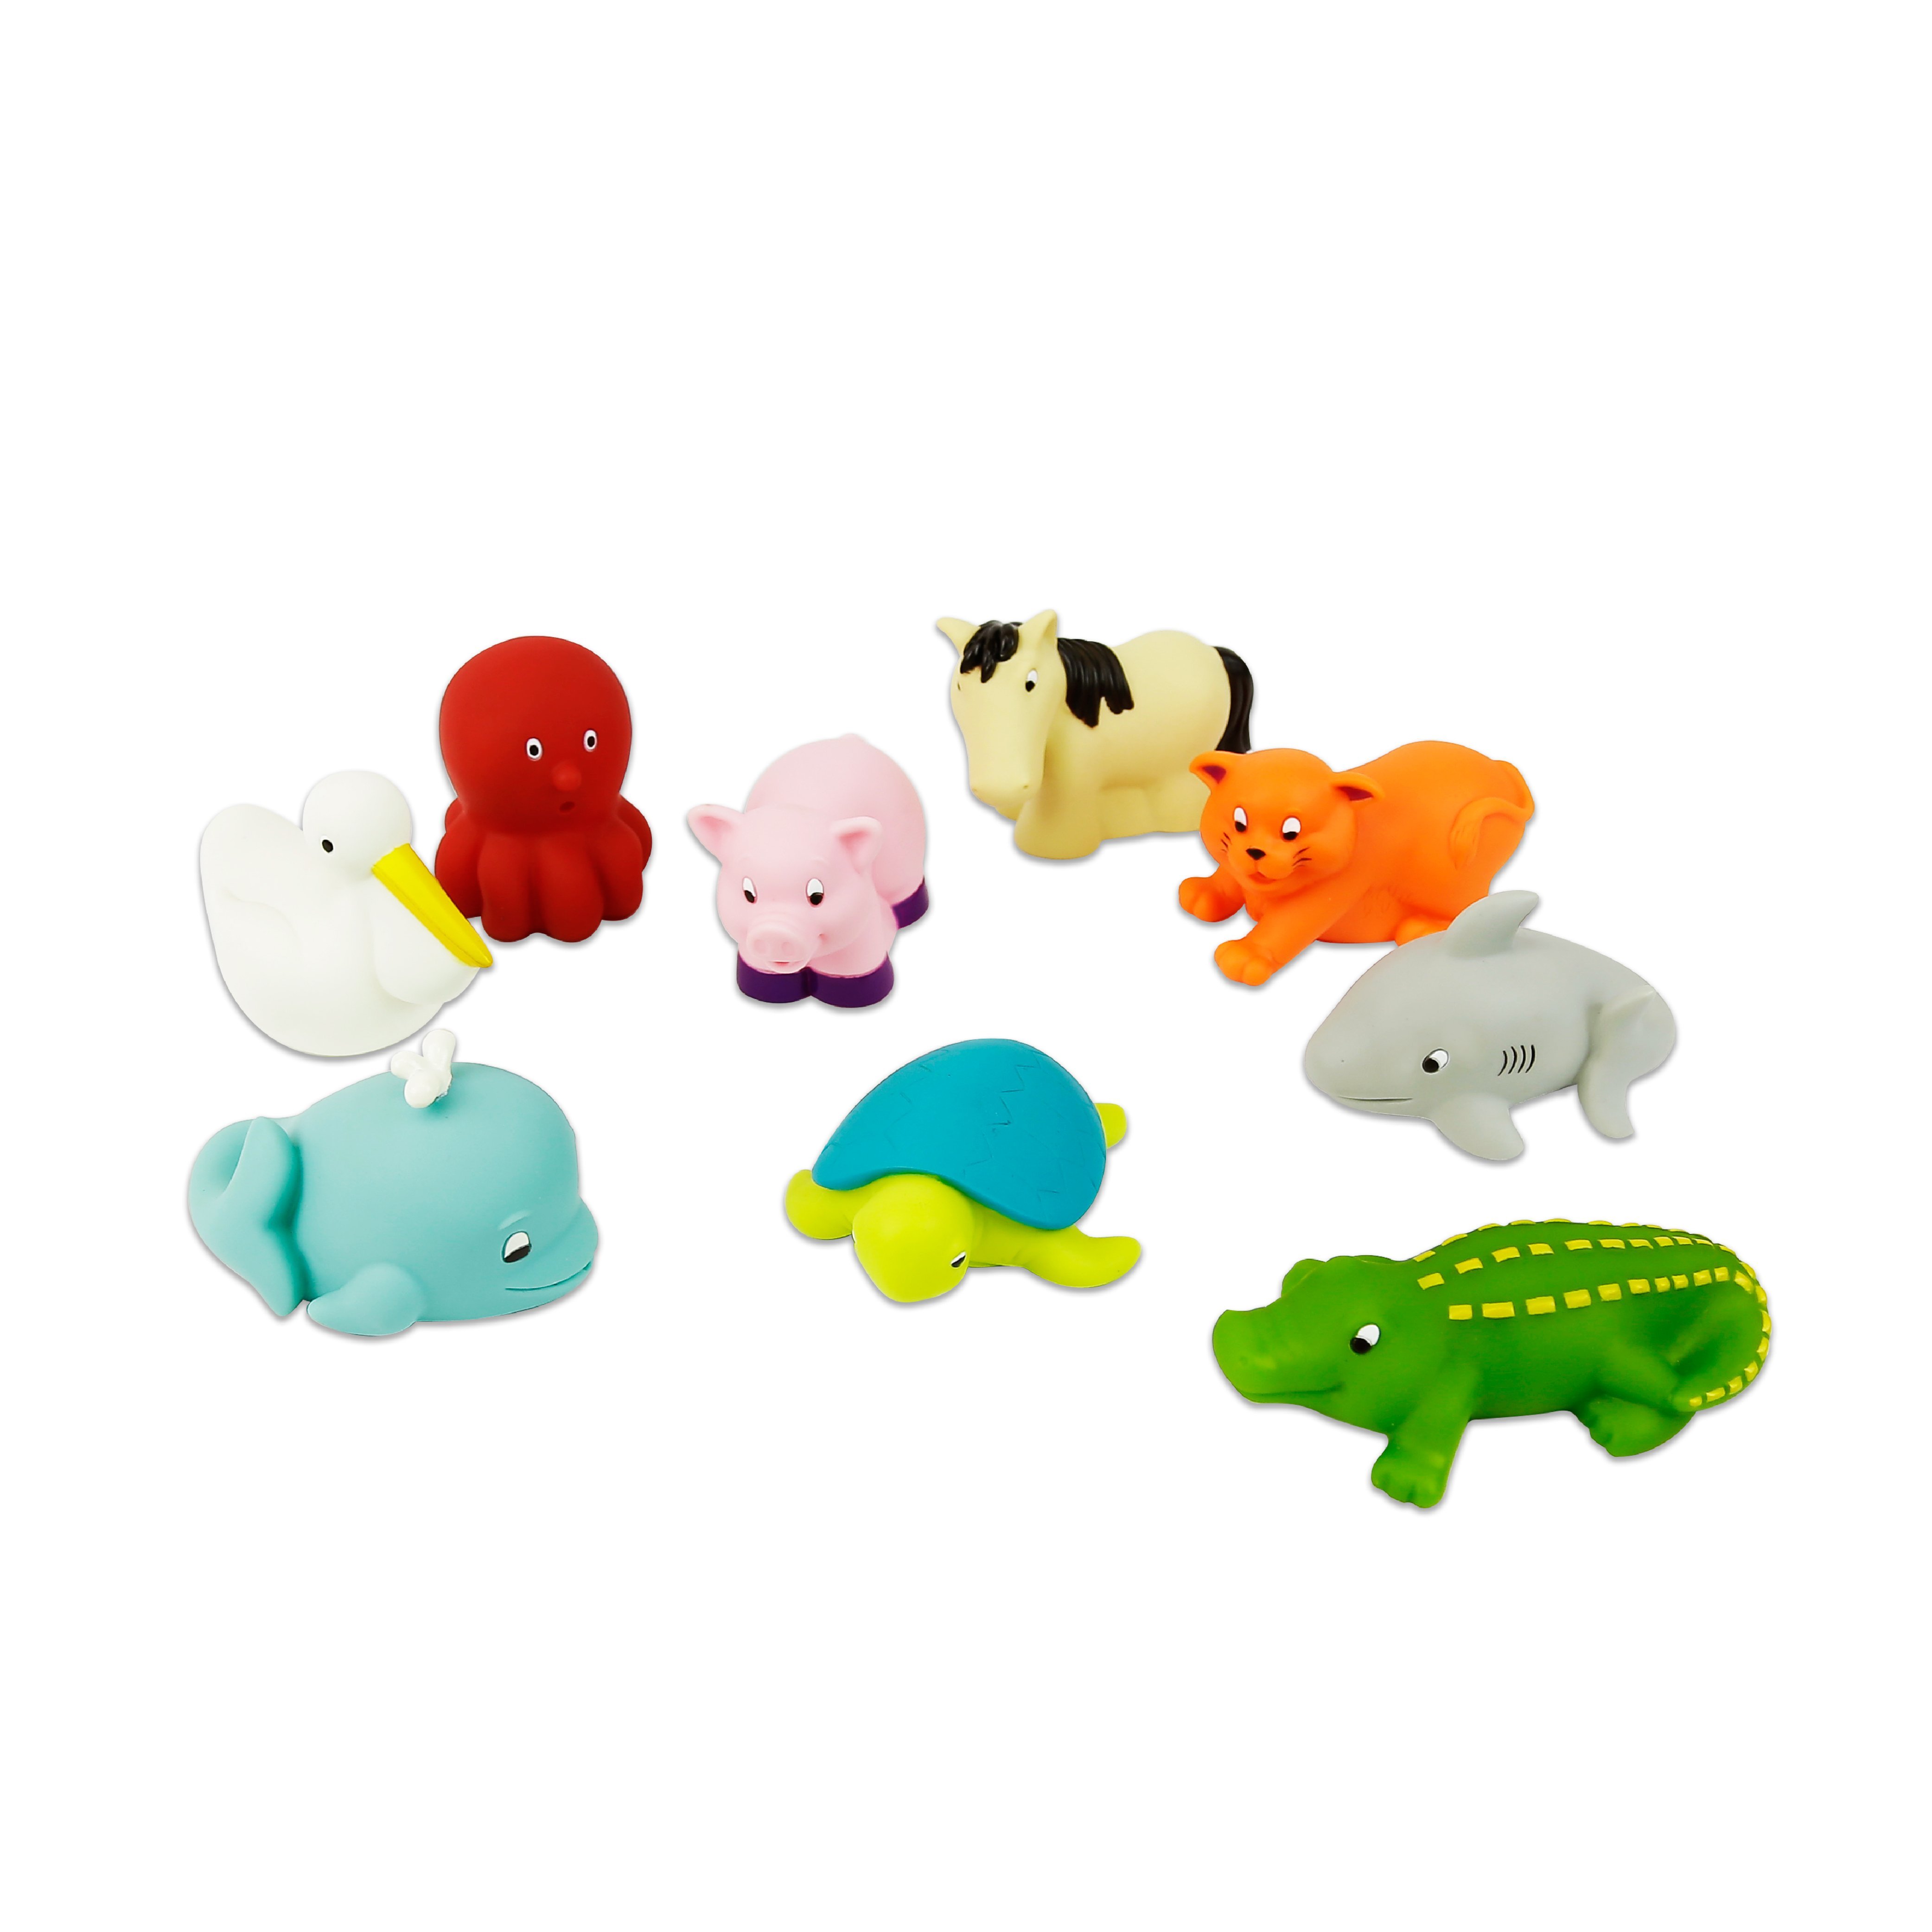 【美國B.Toys感統玩具】《 BATTAT 》洗澡玩具_烏龜與朋友們 (9pcs)【紫貝殼】